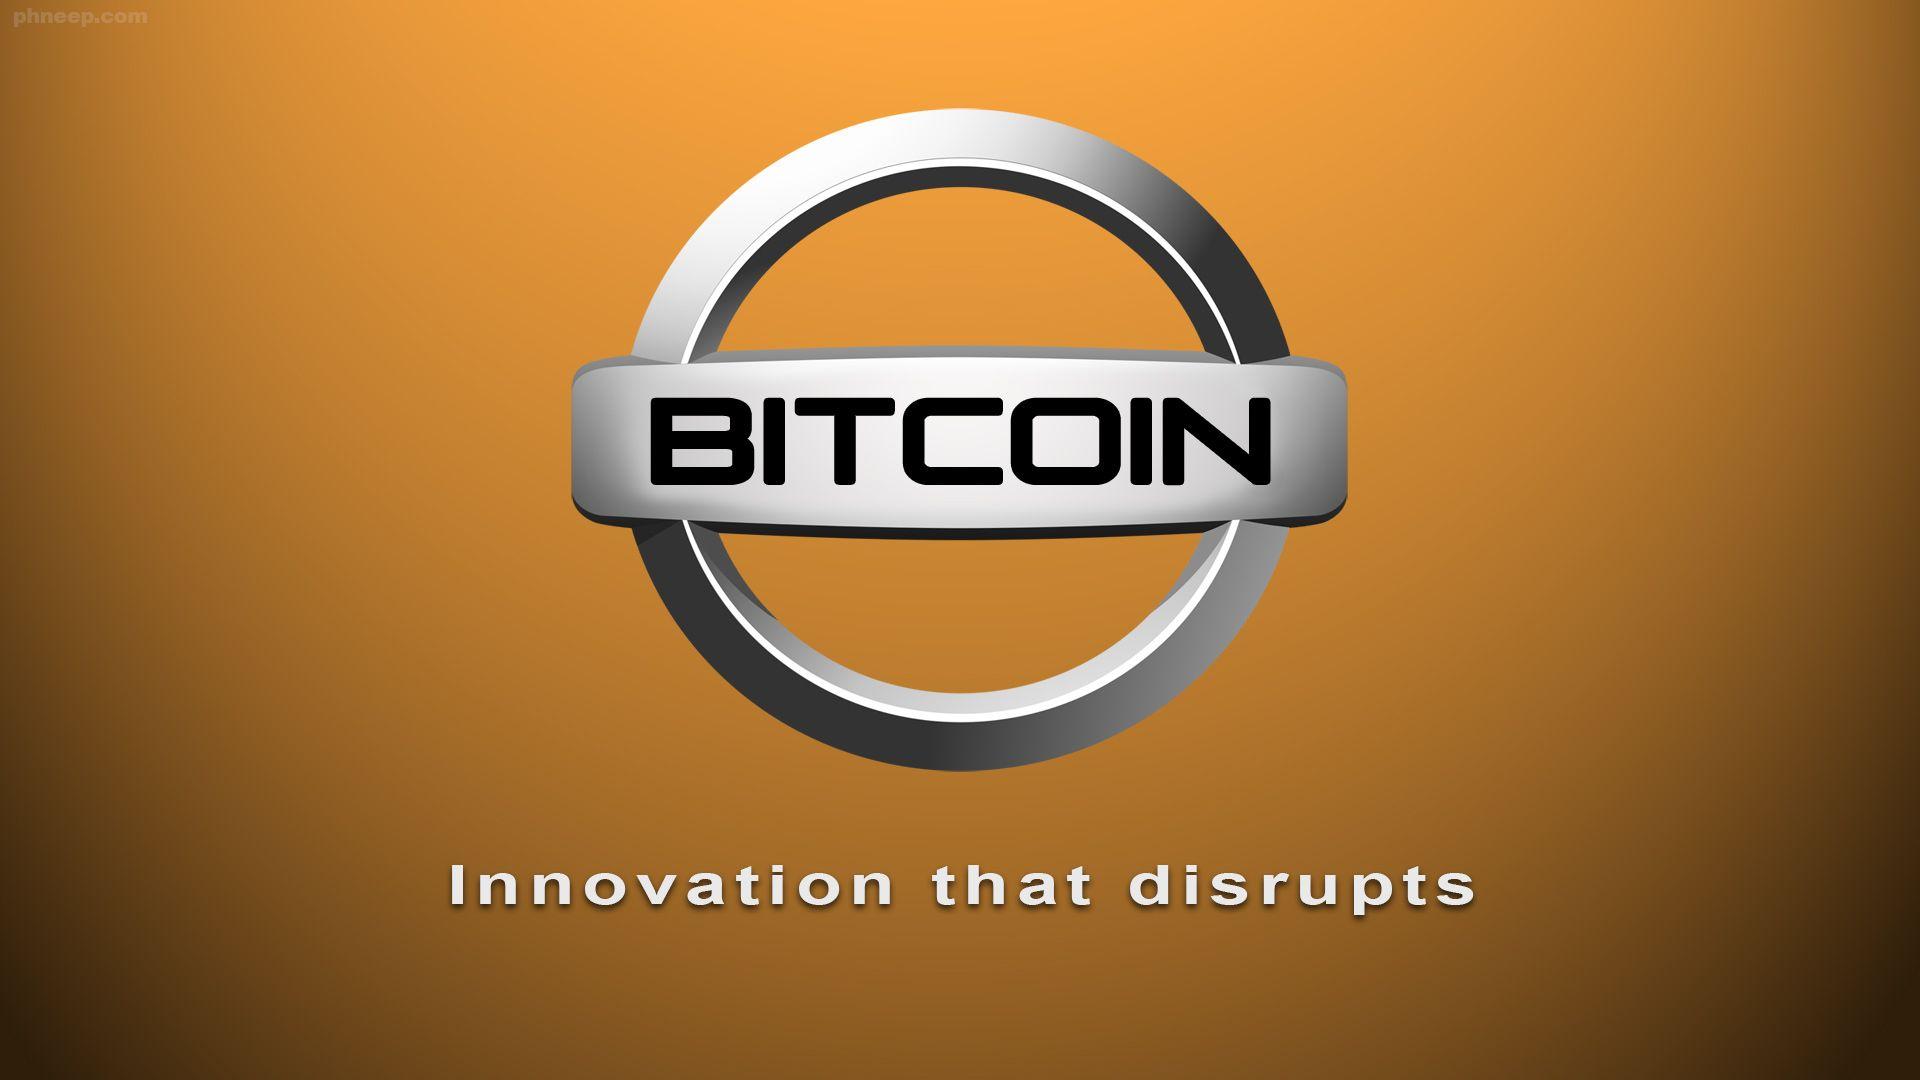 Orange Circle Car Logo - Phneep! » Bitcoin Car Logos